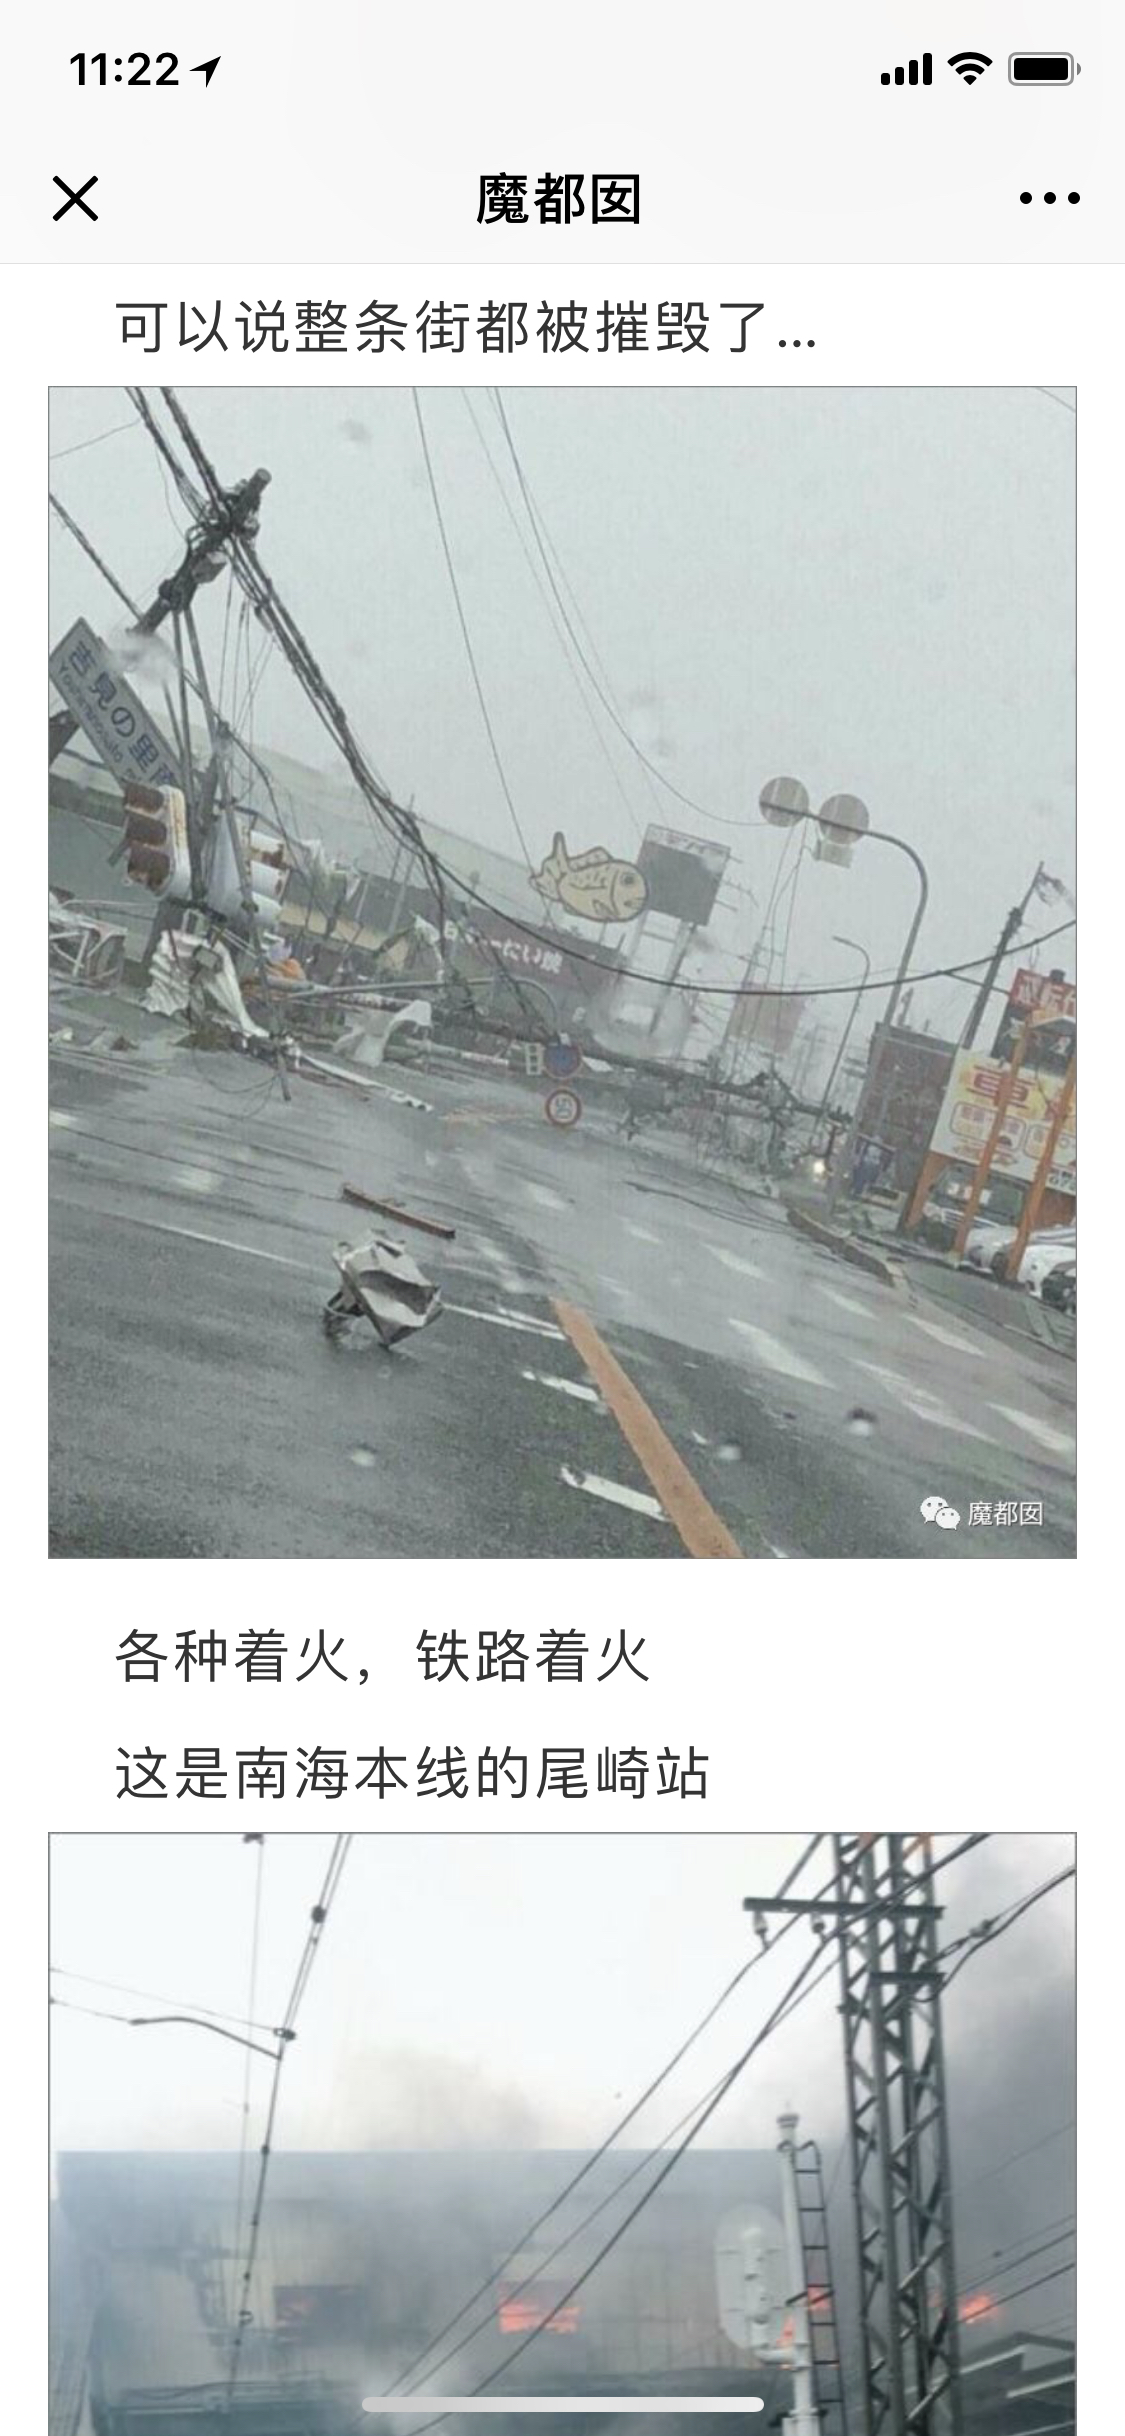 最近日本台风暴雨 影响大阪京都奈良旅游嘛?